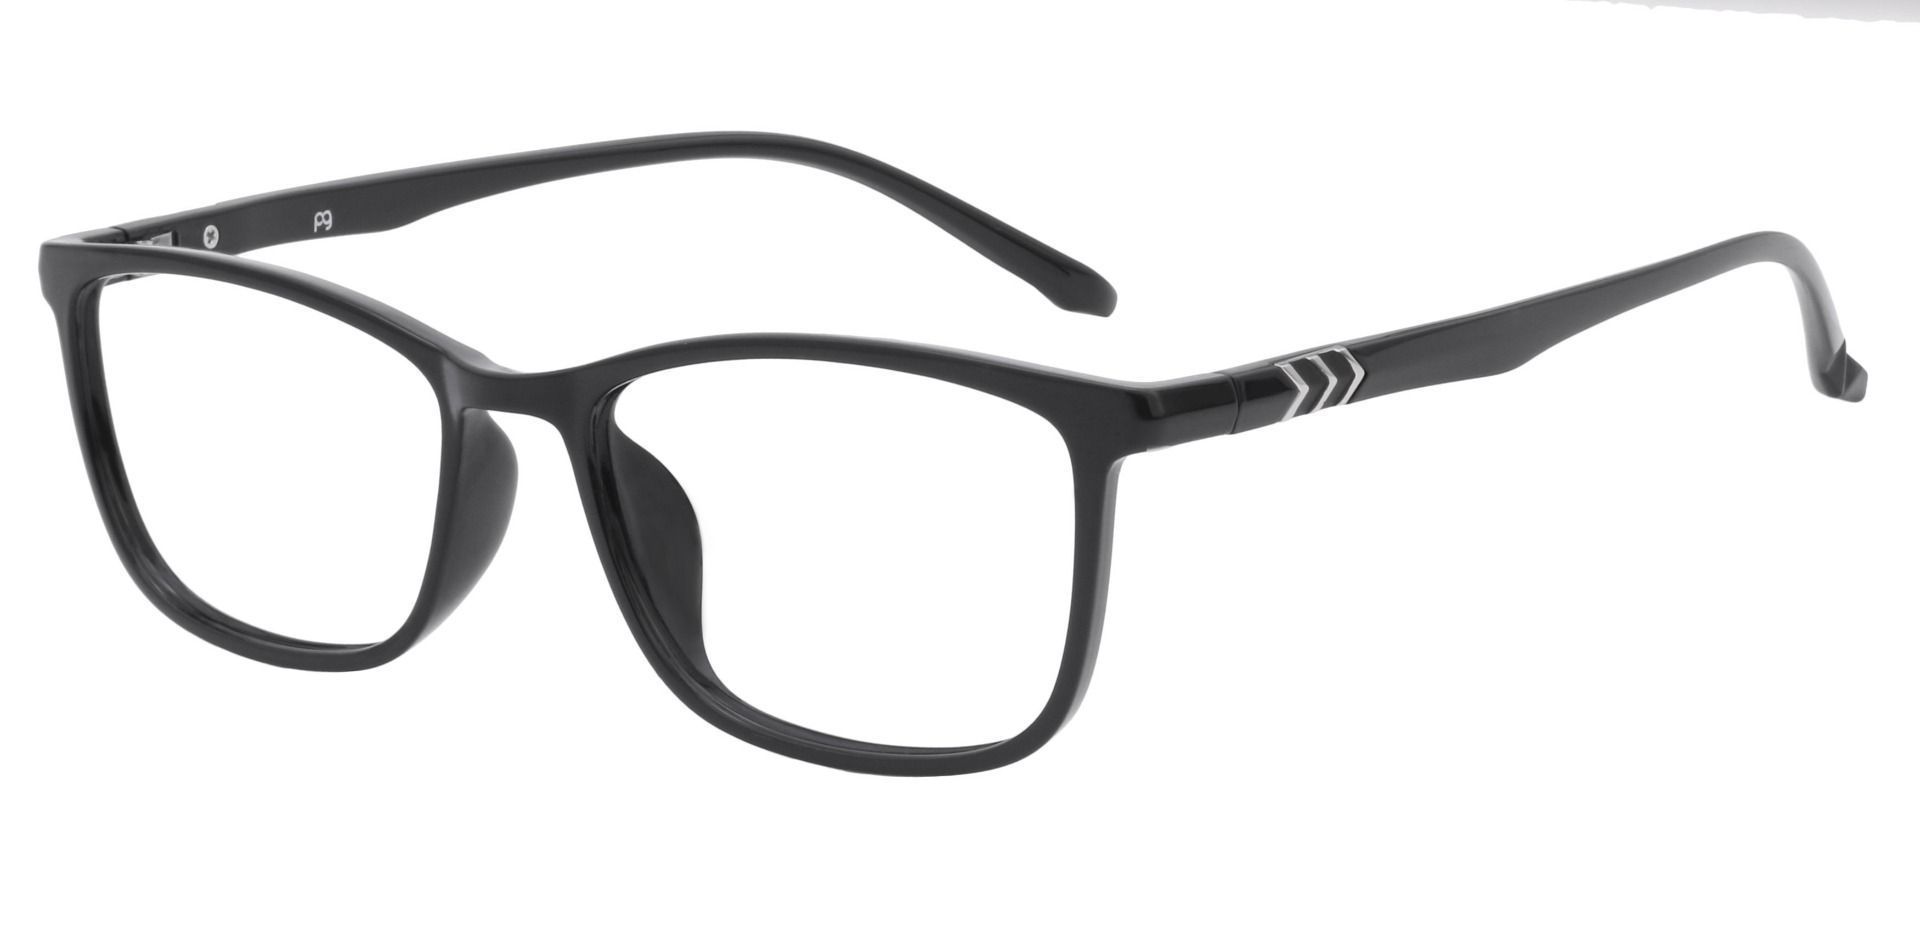 Harvest Rectangle Lined Bifocal Glasses - Black